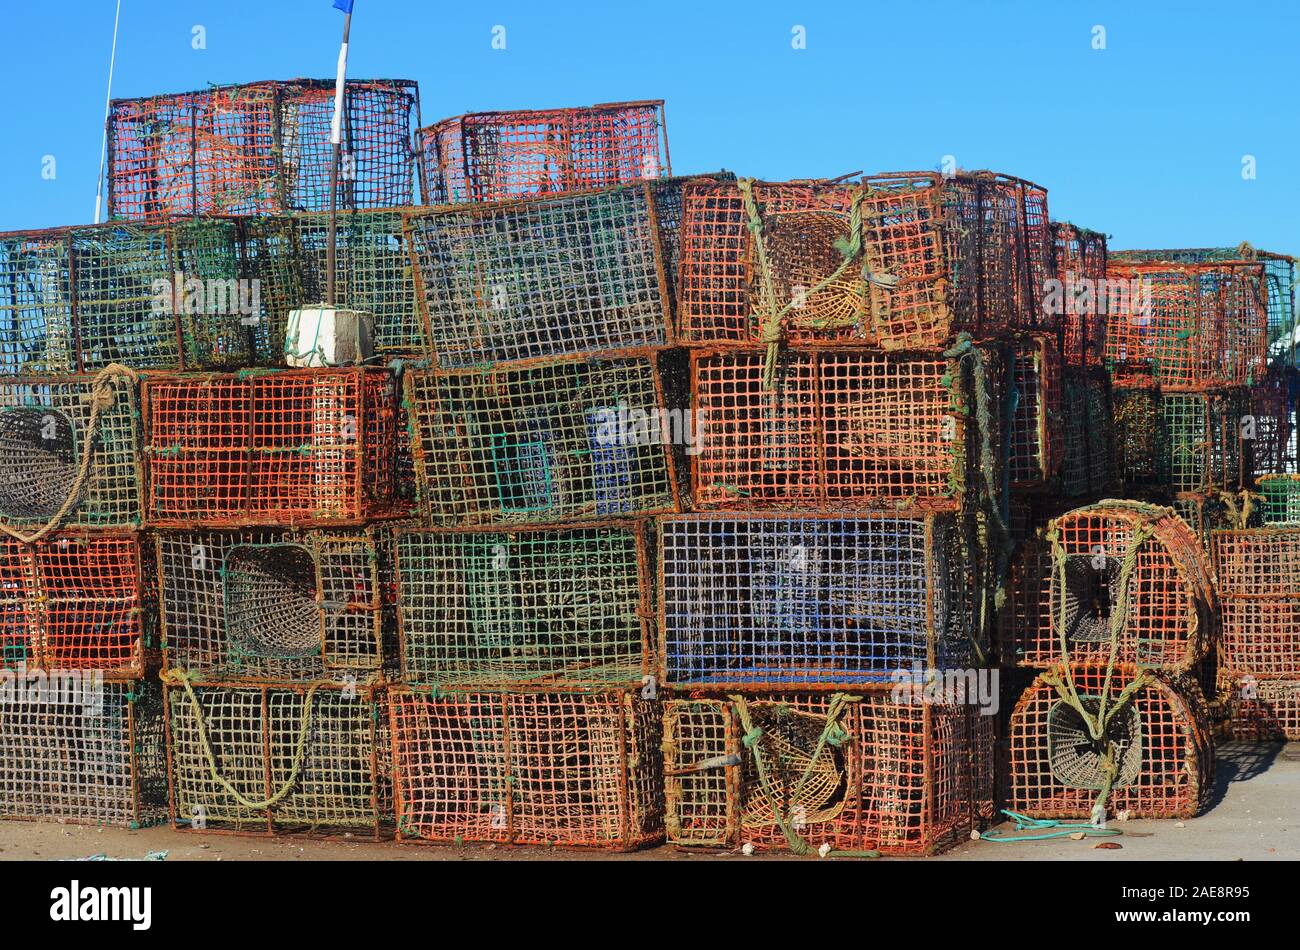 Nasse e pentole usate nell'artigianale di seppie e polpi pesca, Vila Real do Santo Antonio, Algarve, PORTOGALLO Foto Stock